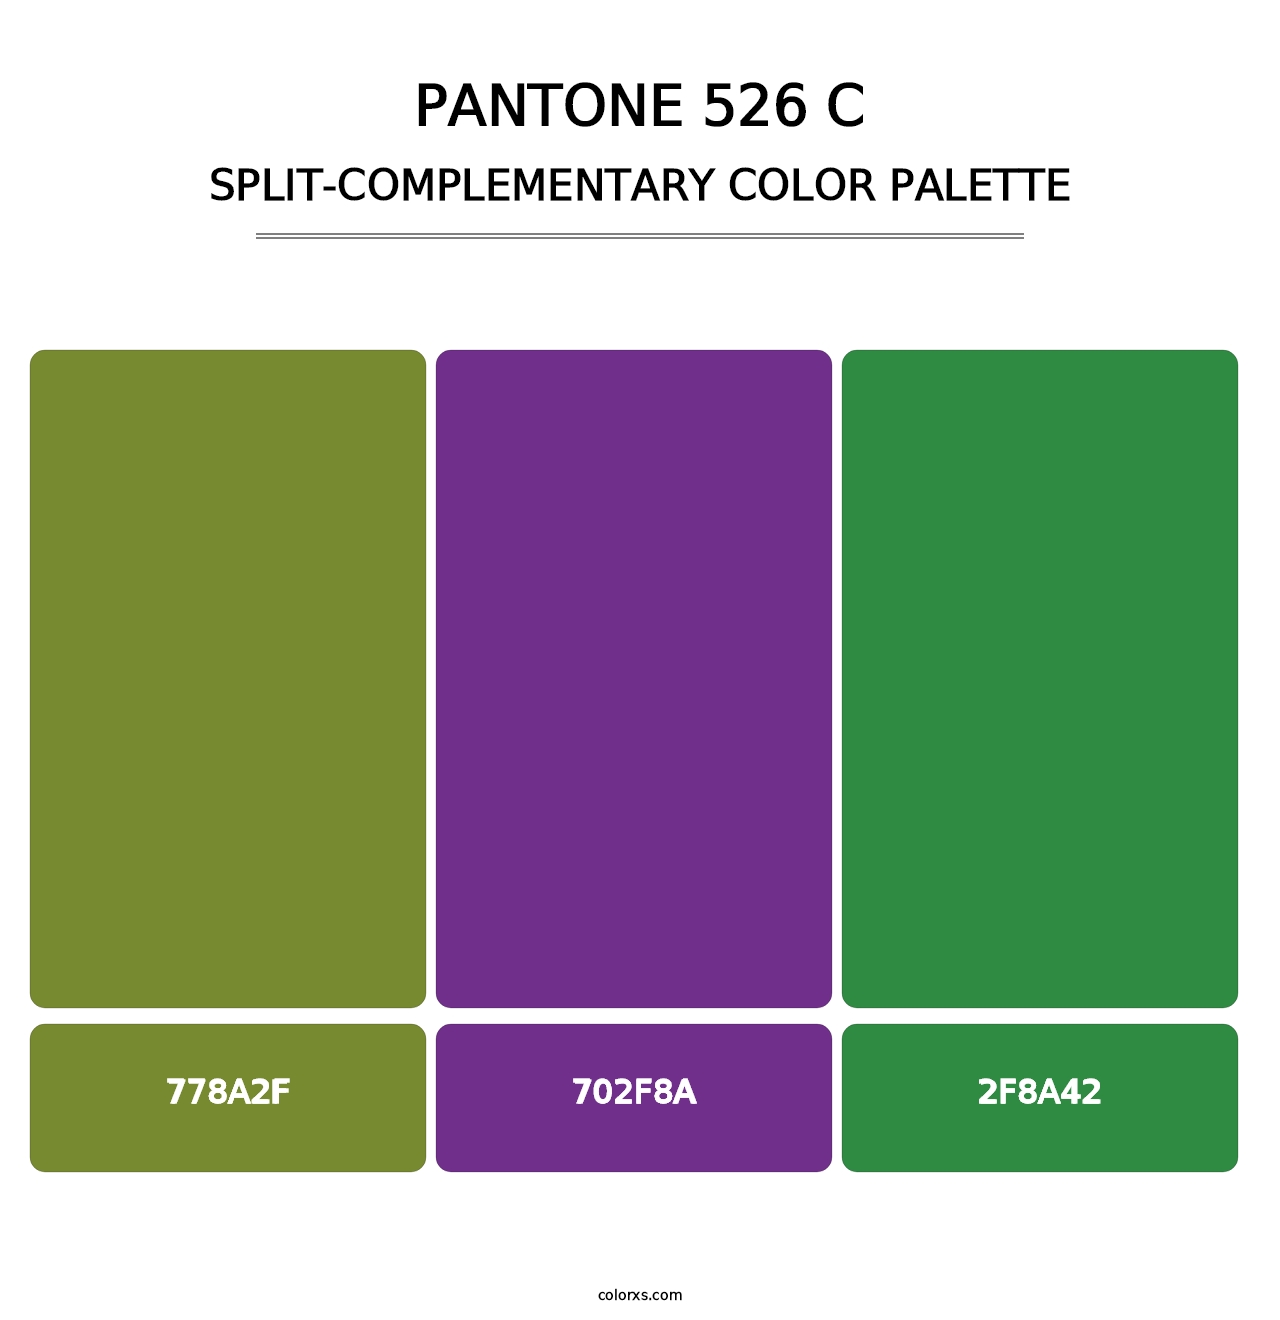 PANTONE 526 C - Split-Complementary Color Palette